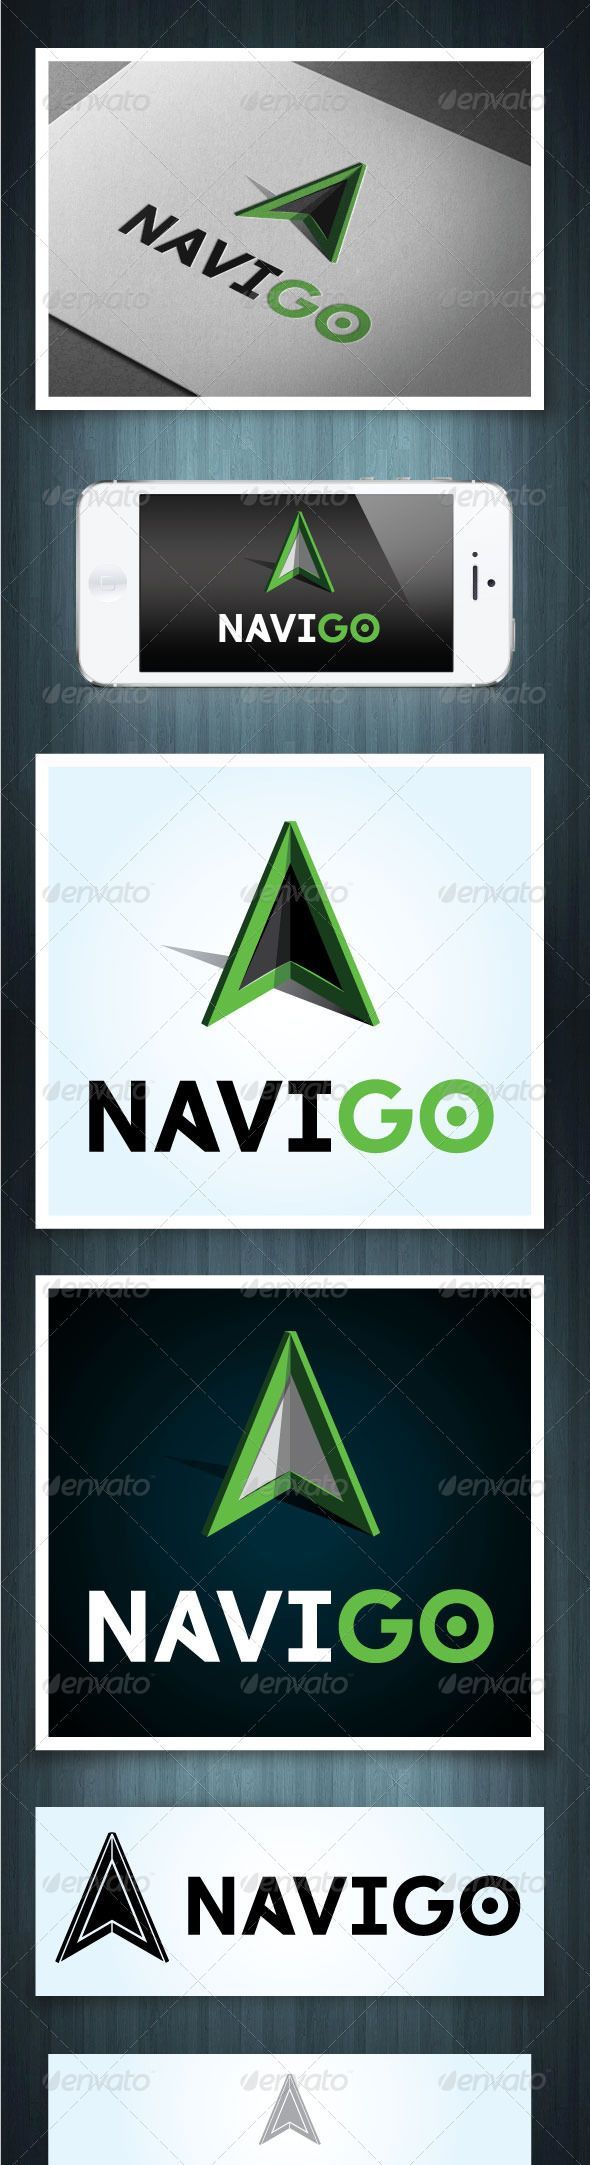 Travel infographic  Navigo #GraphicRiver Navigo is a 3D arrowhead logo. It can b...